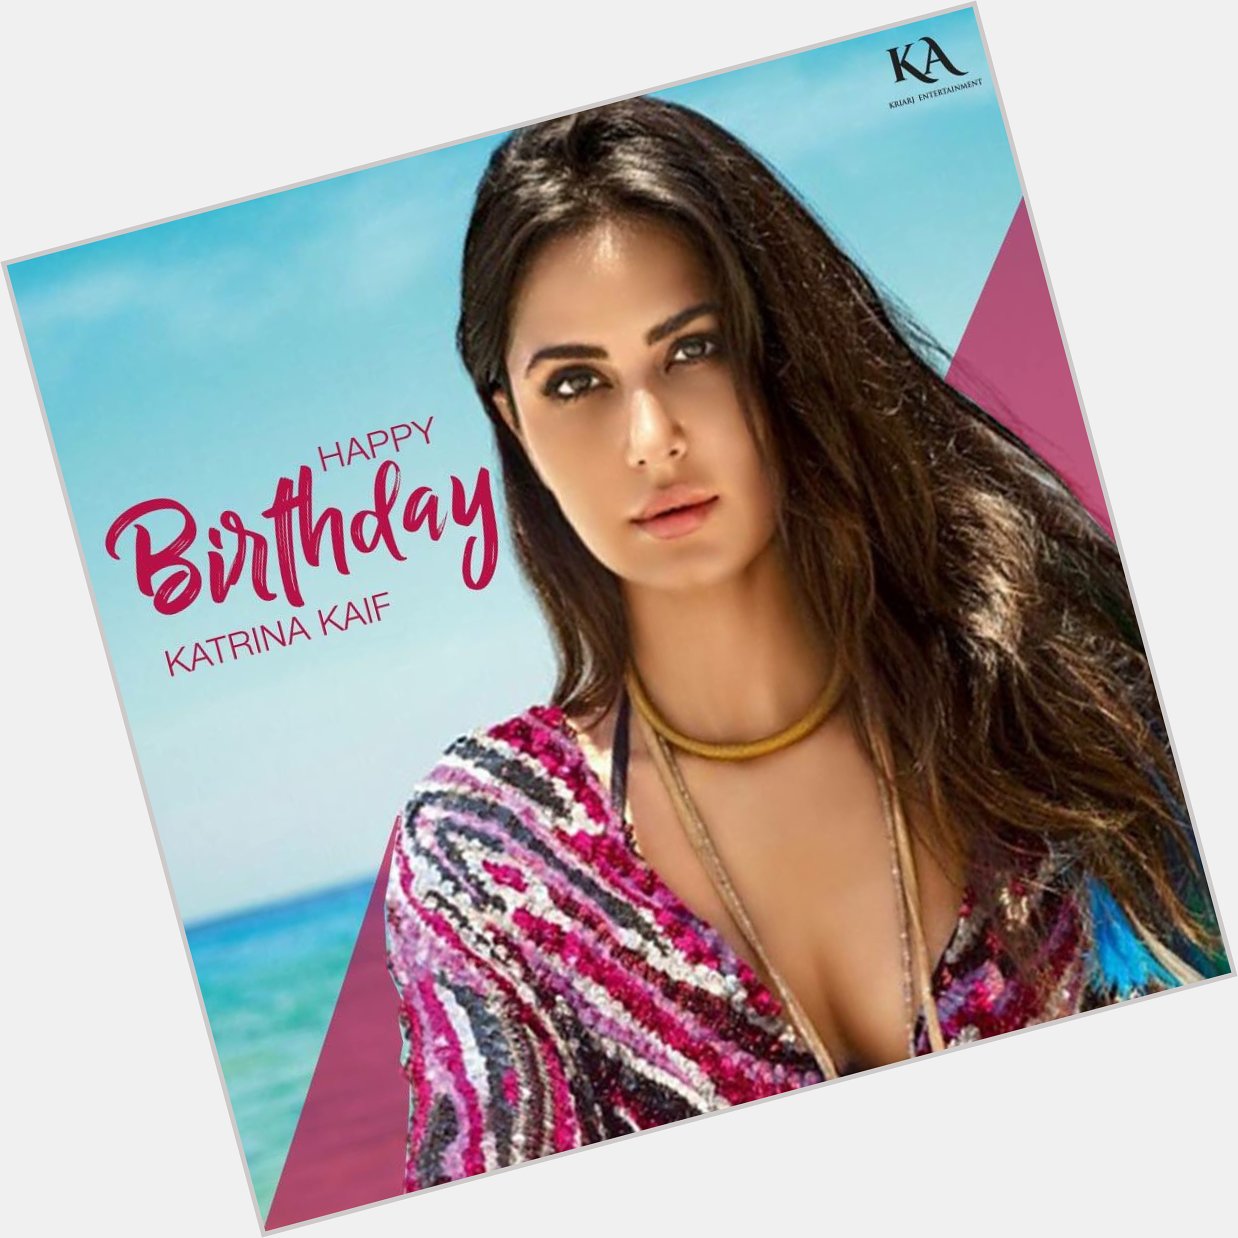 The diva of Bollywood! 
Here\s wishing Katrina Kaif a very Happy Birthday. 